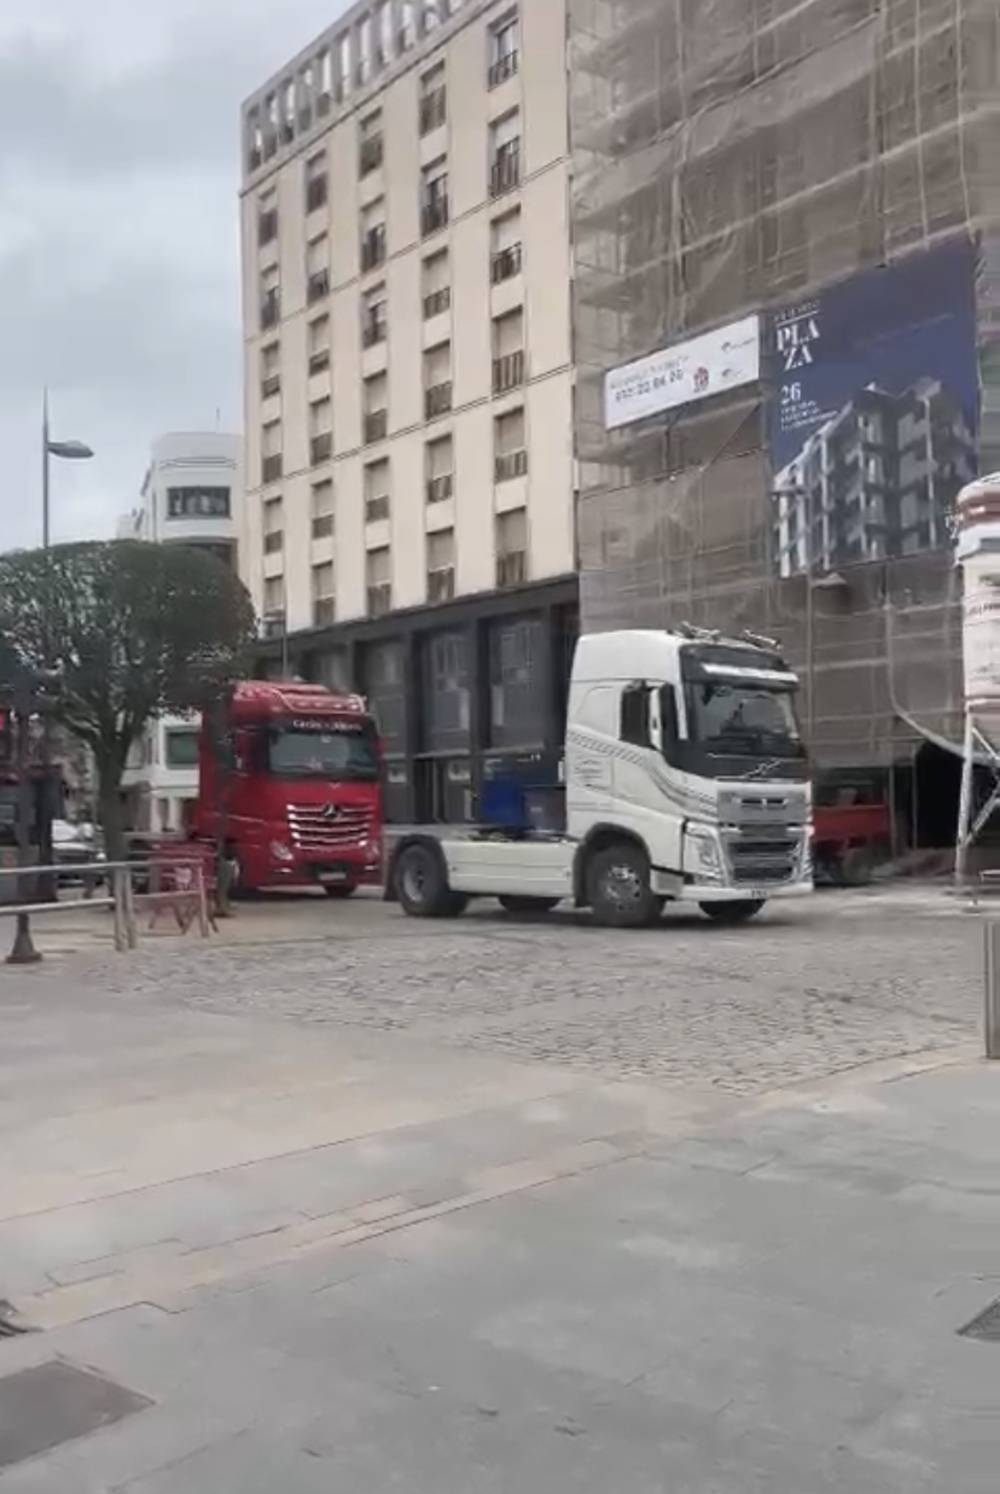 Los camiones colapsan el centro de Soria